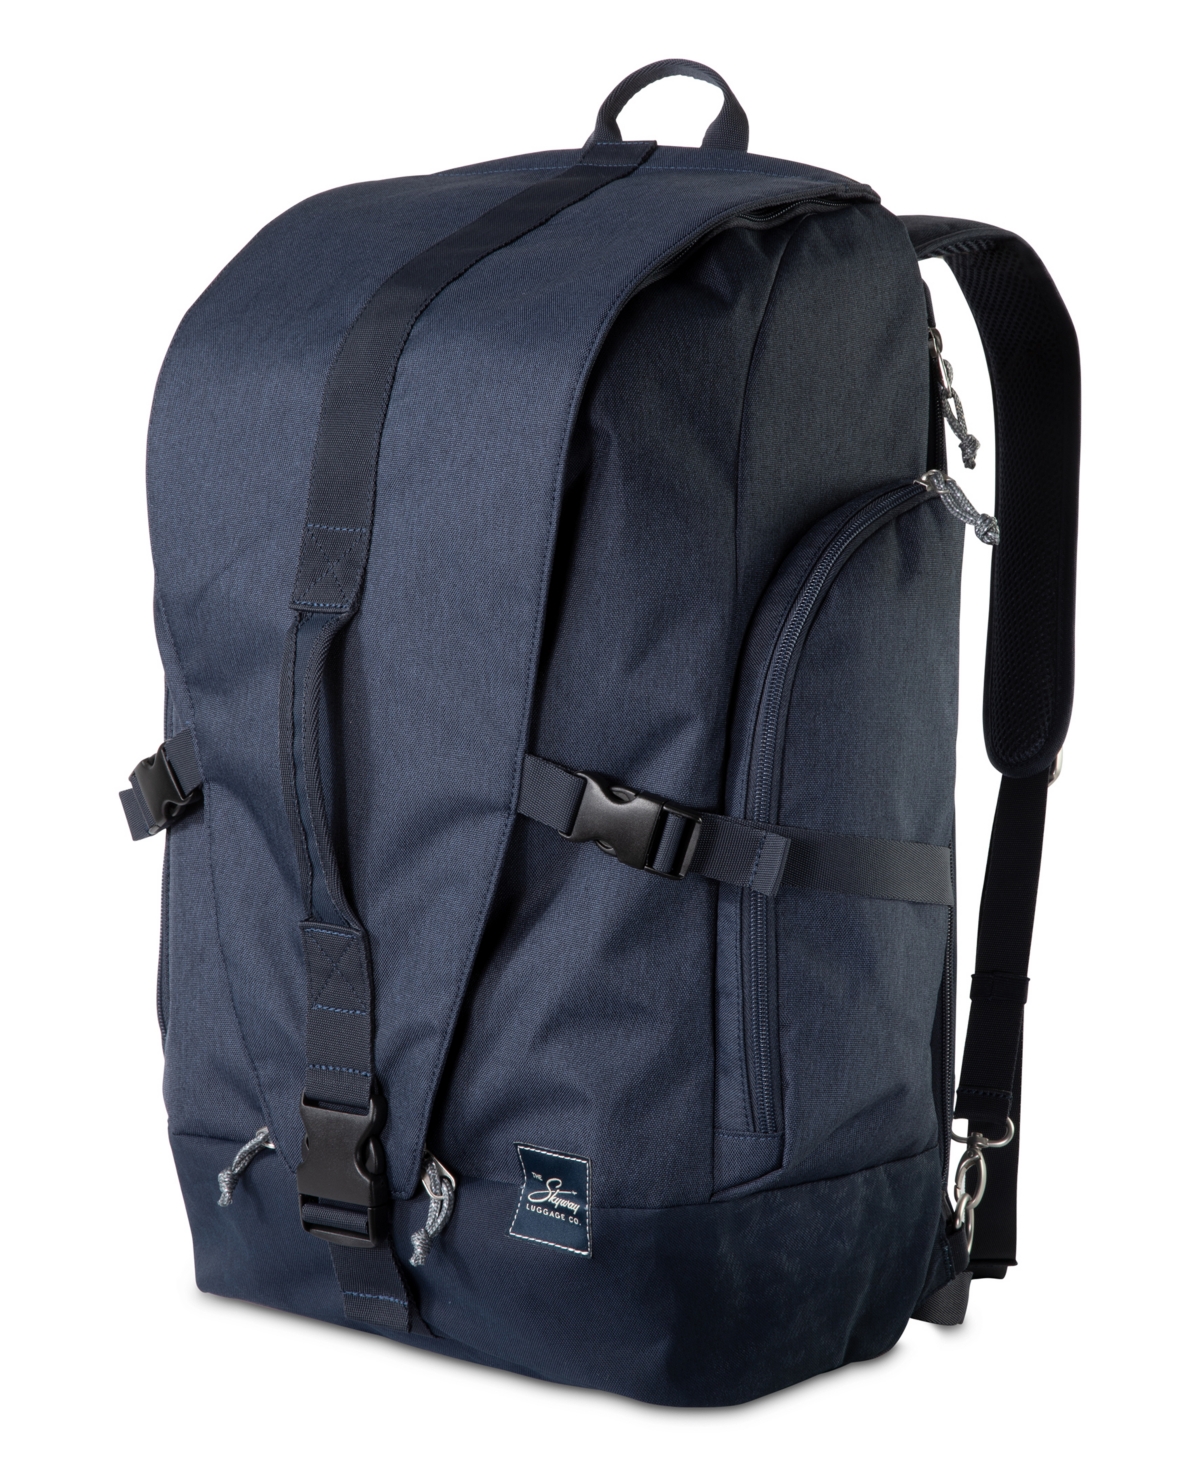 Rainier Weekender Backpack, 43" - Tahoe Blue